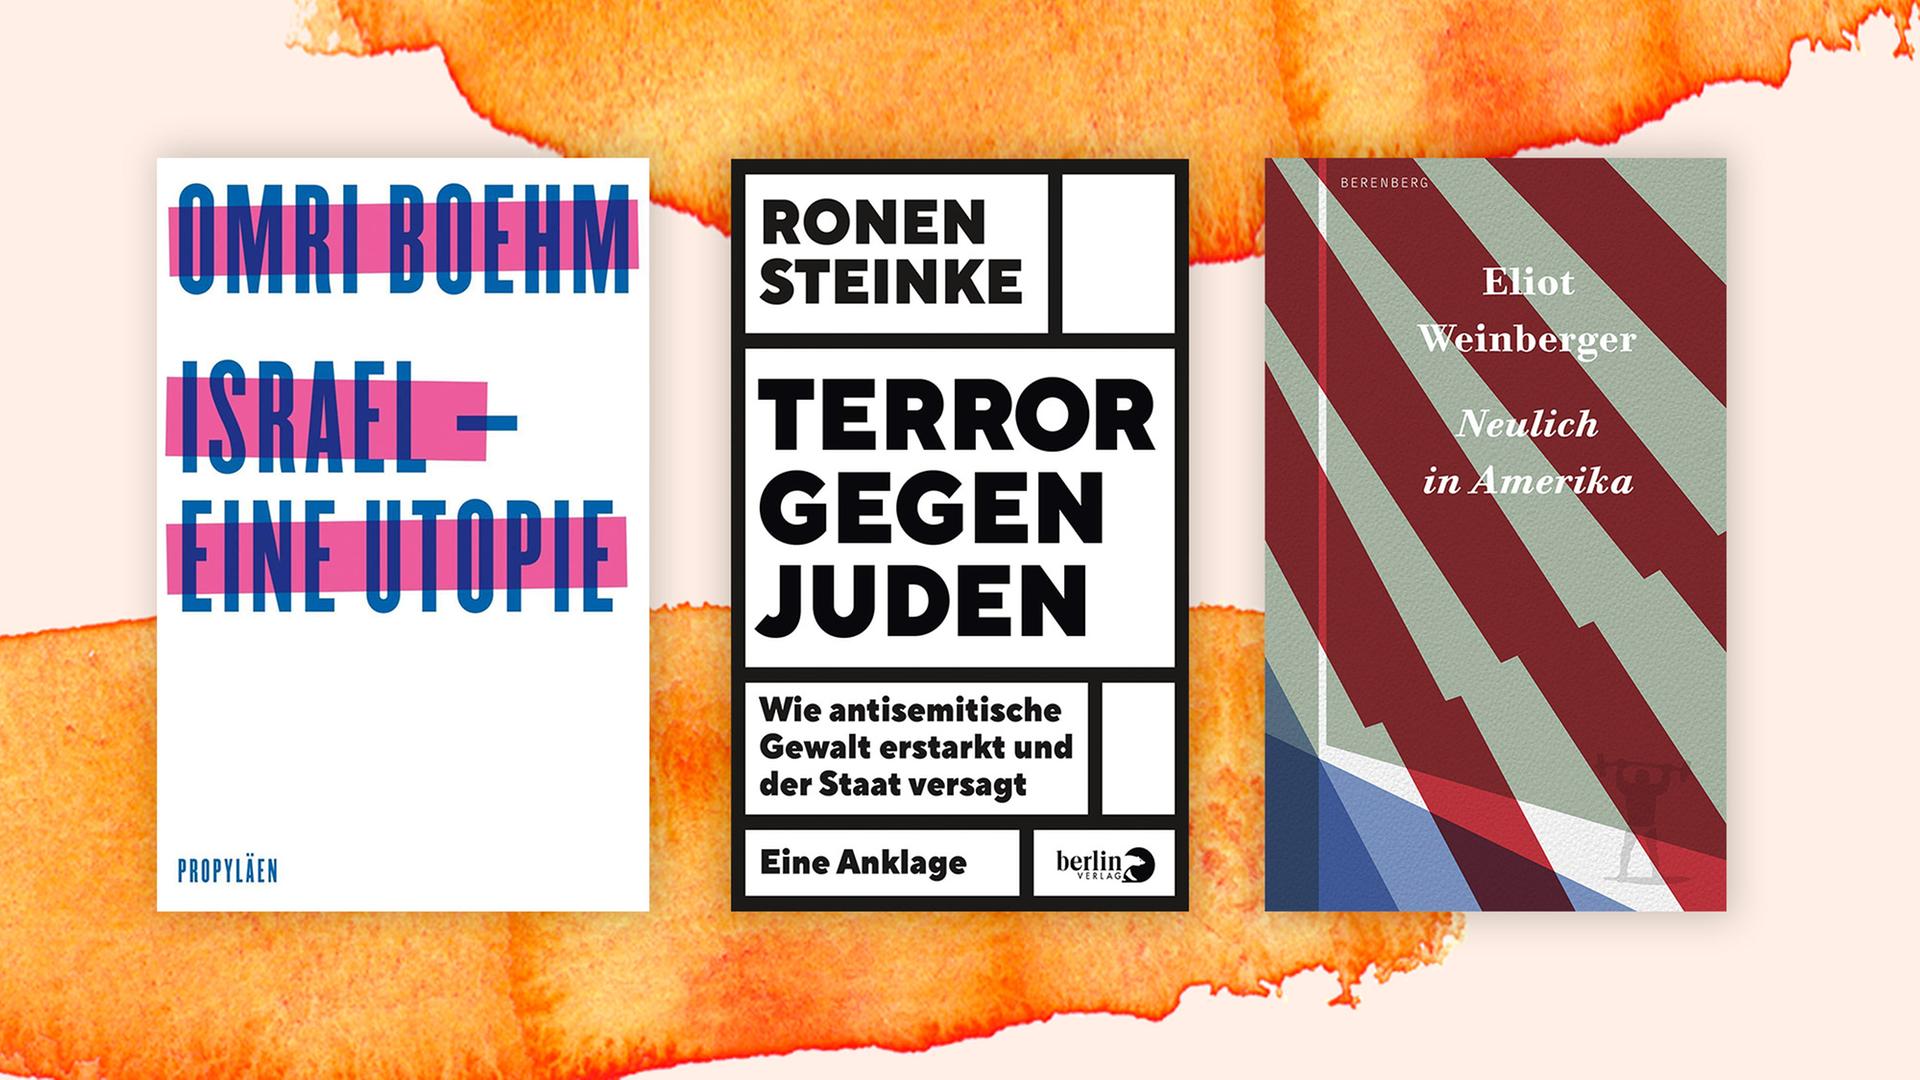 Die Cover der drei Toptitel der Sachbuchbestenliste für den September 2020 sind vor orangefarbenem Hintergrund zu sehen: Omri Boehm: Israel eine Utopie, Ronen Steinke: Terror gegen Juden, Eliot Weinberger: Neulich in Amerika.